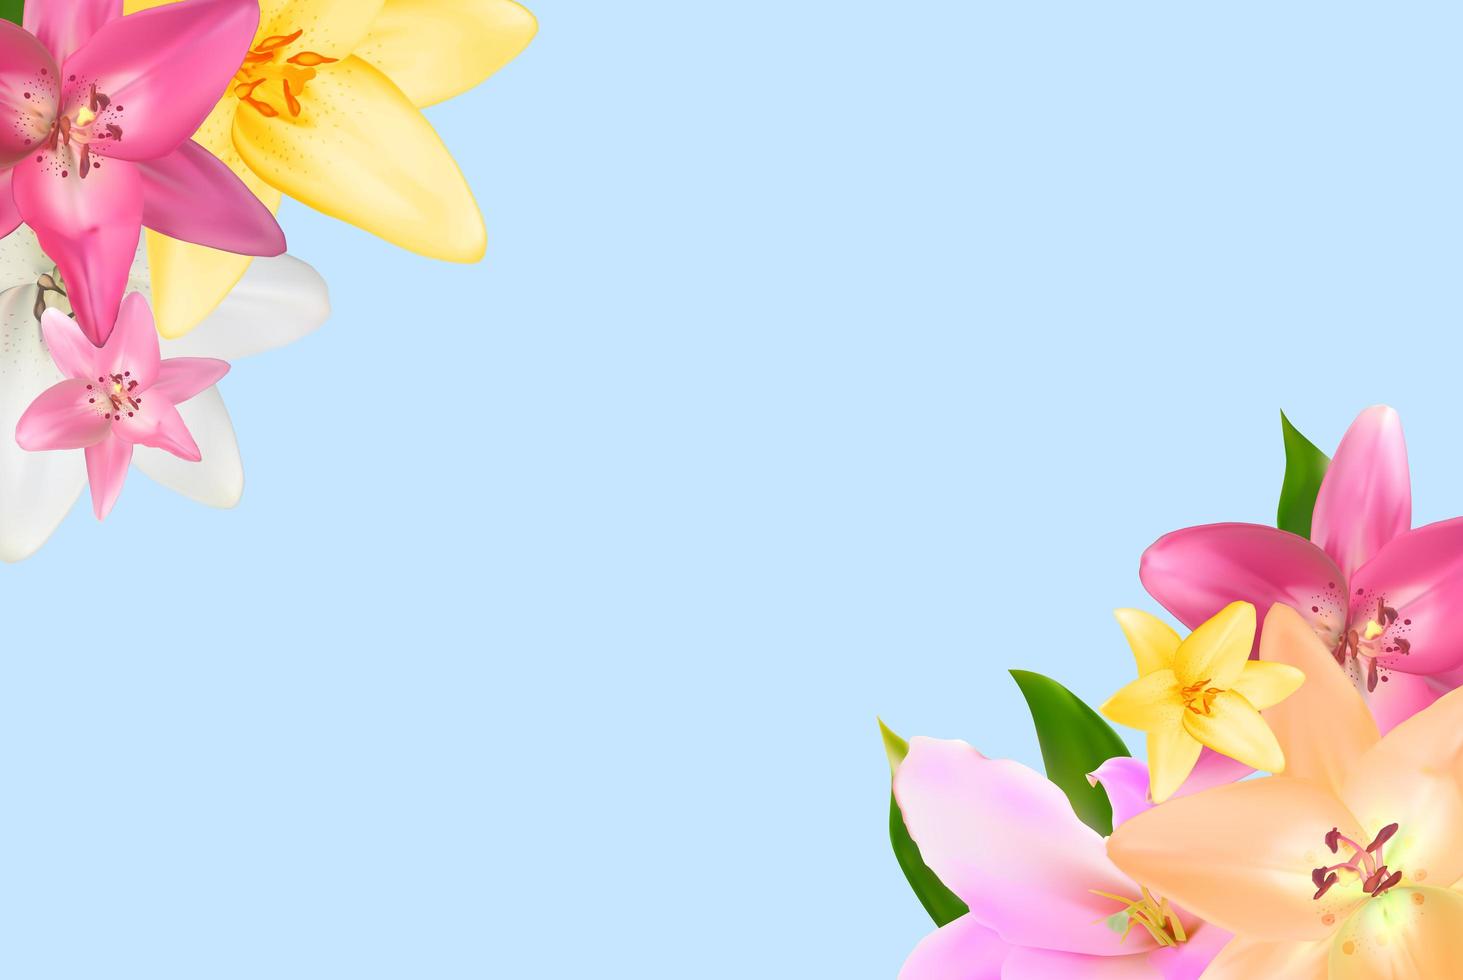 illustration mit lilienblumen lokalisiert auf weißem backgro foto